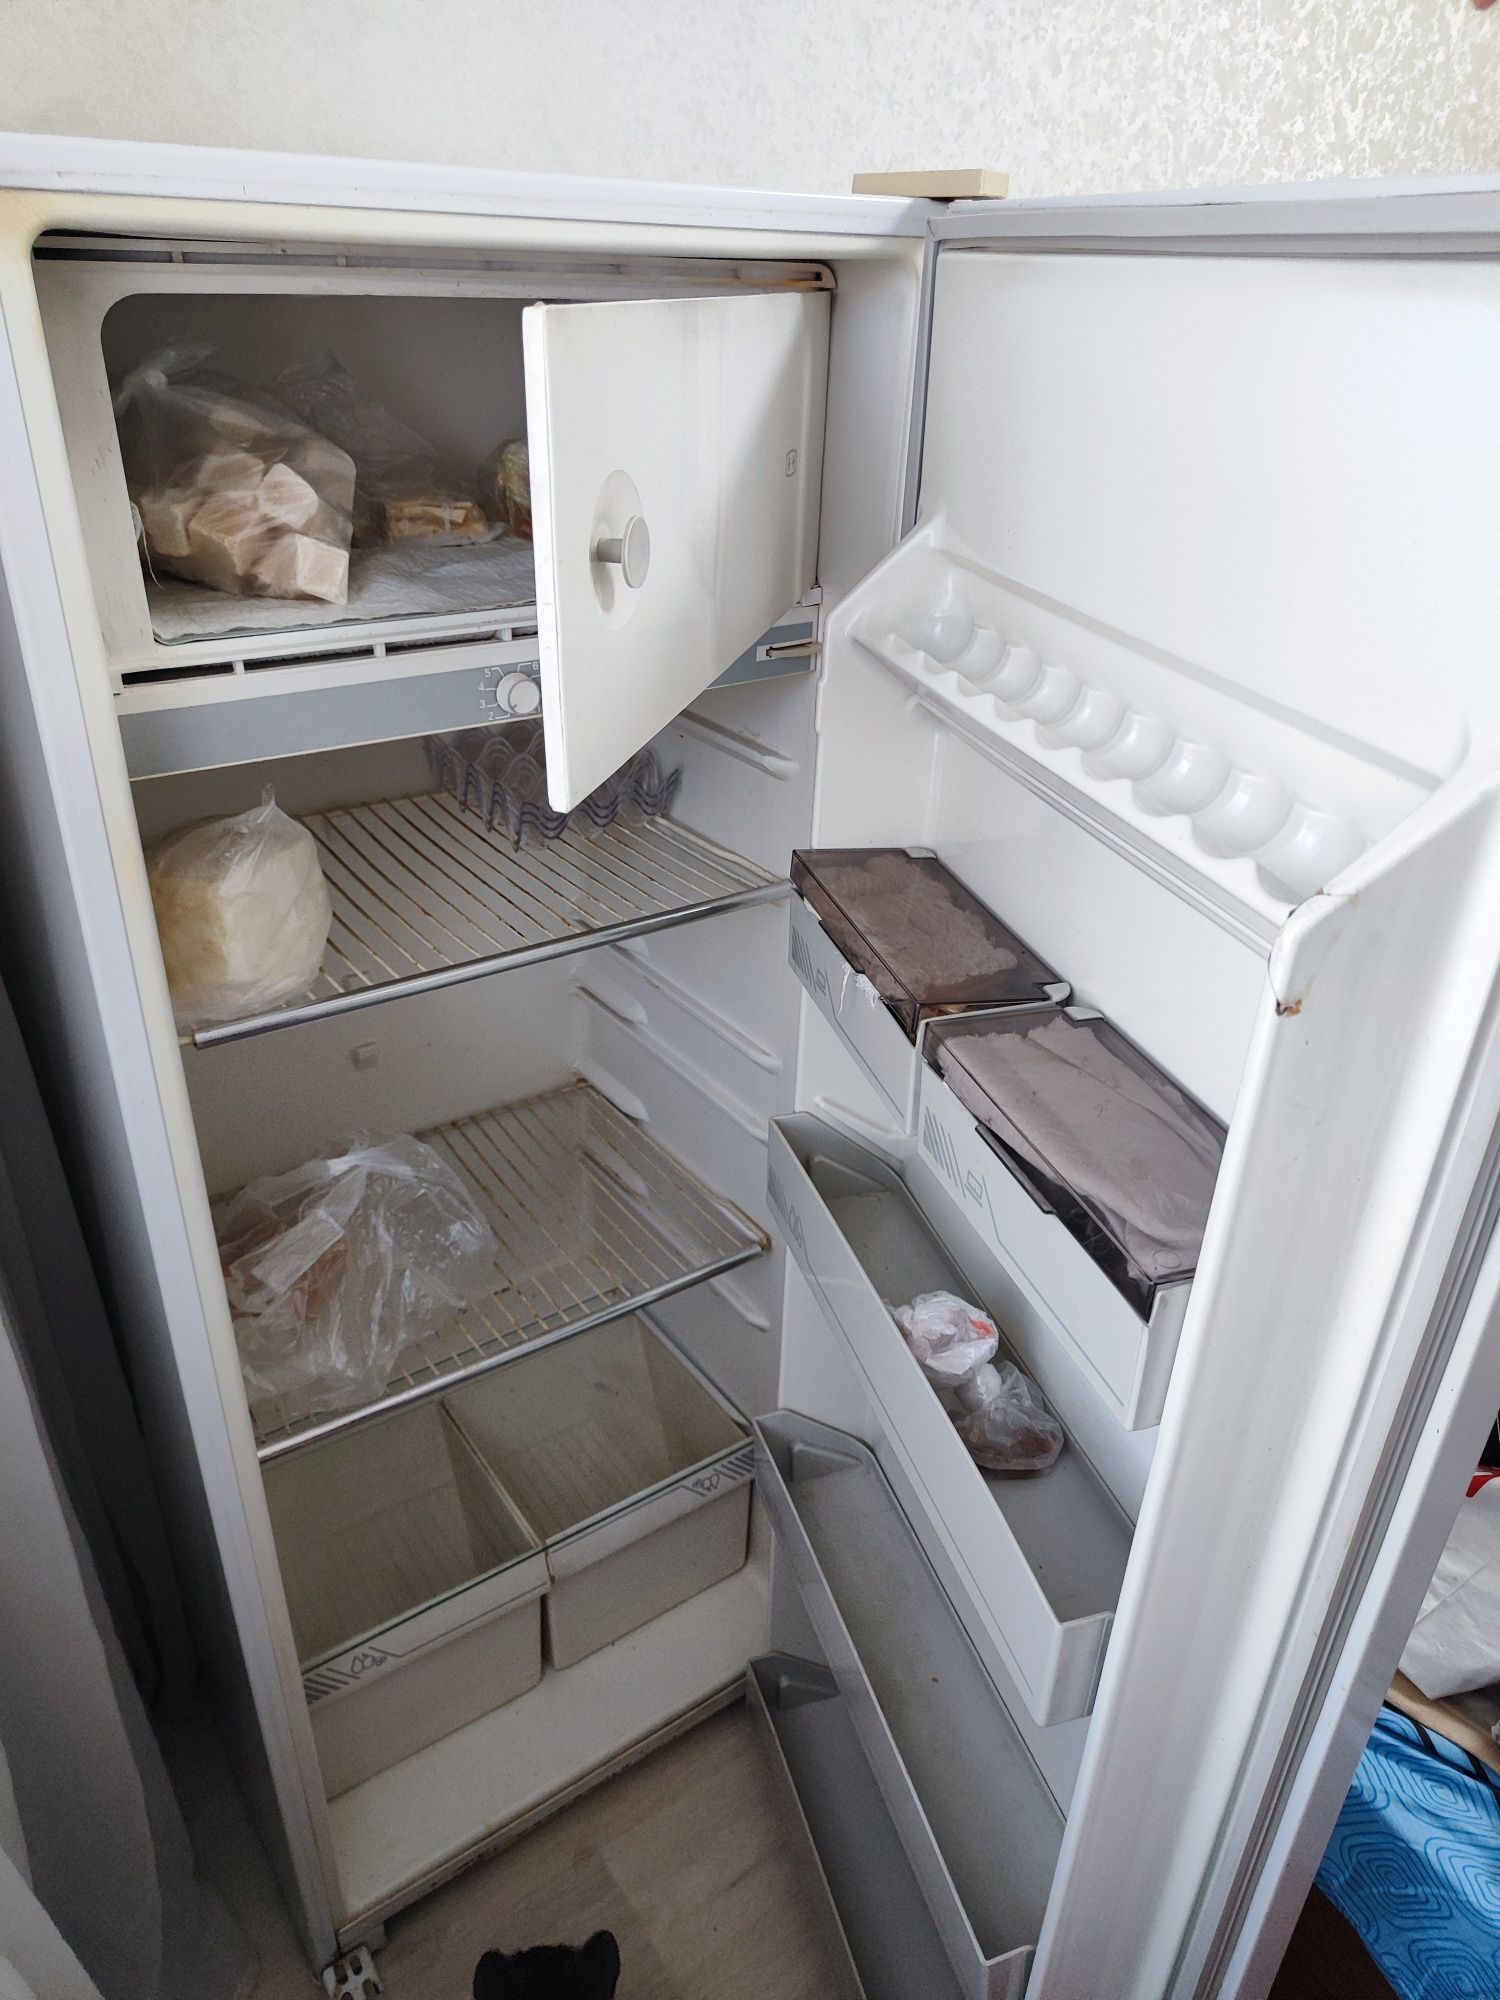 Холодильник с морозильной камерой